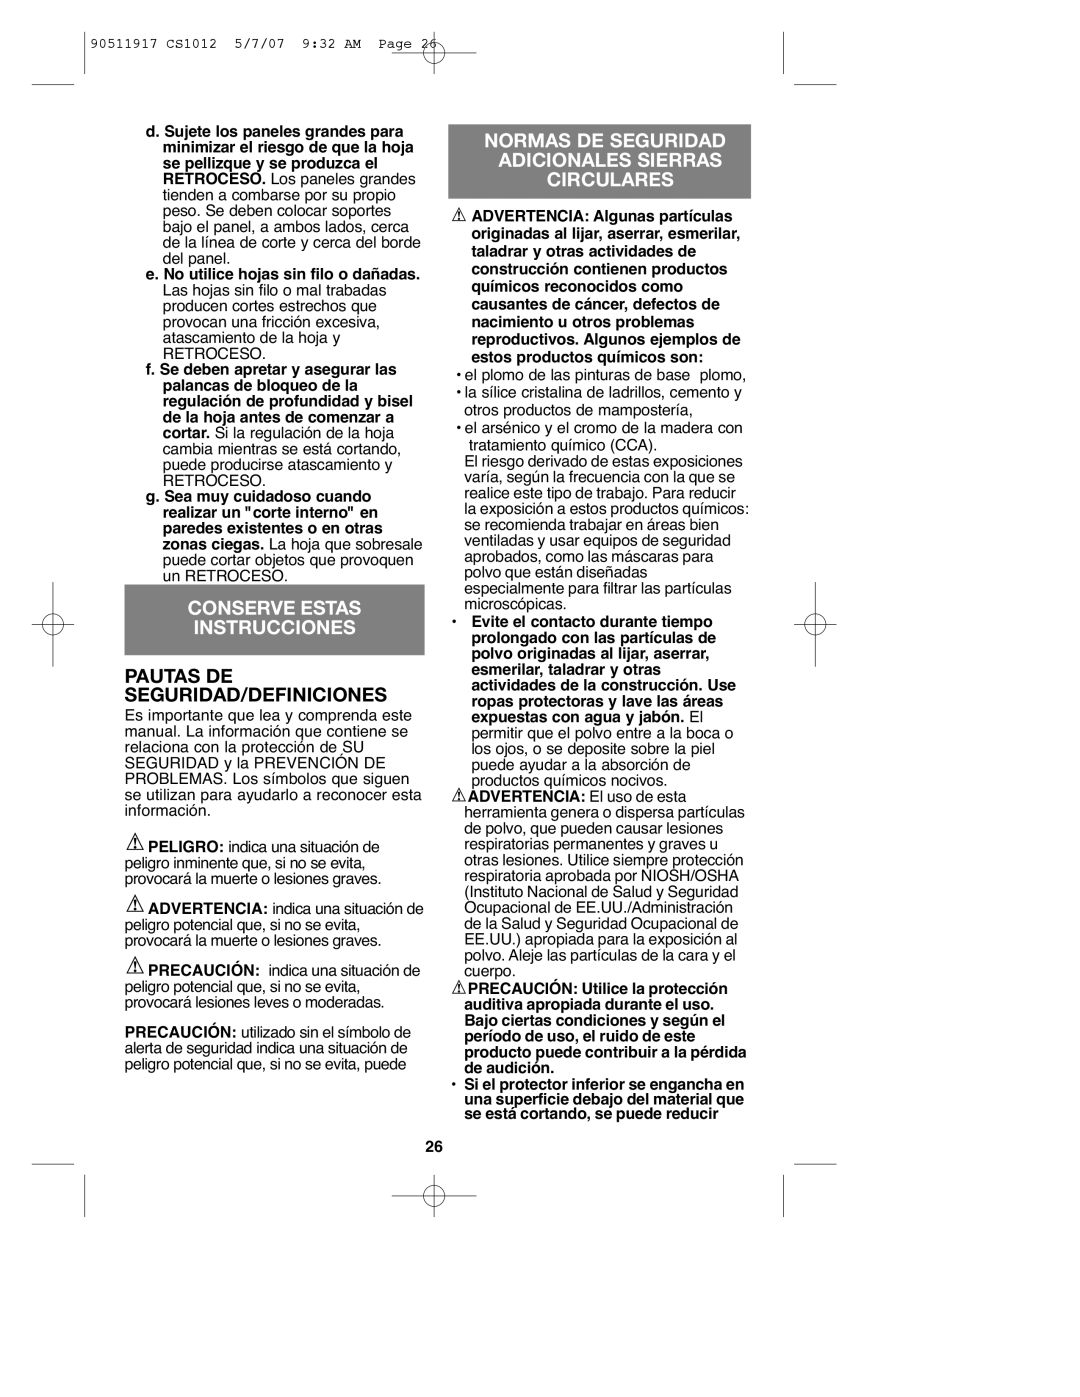 Black & Decker CS1012 instruction manual Conserve Estas Instrucciones, Provocar daños en la propiedad 